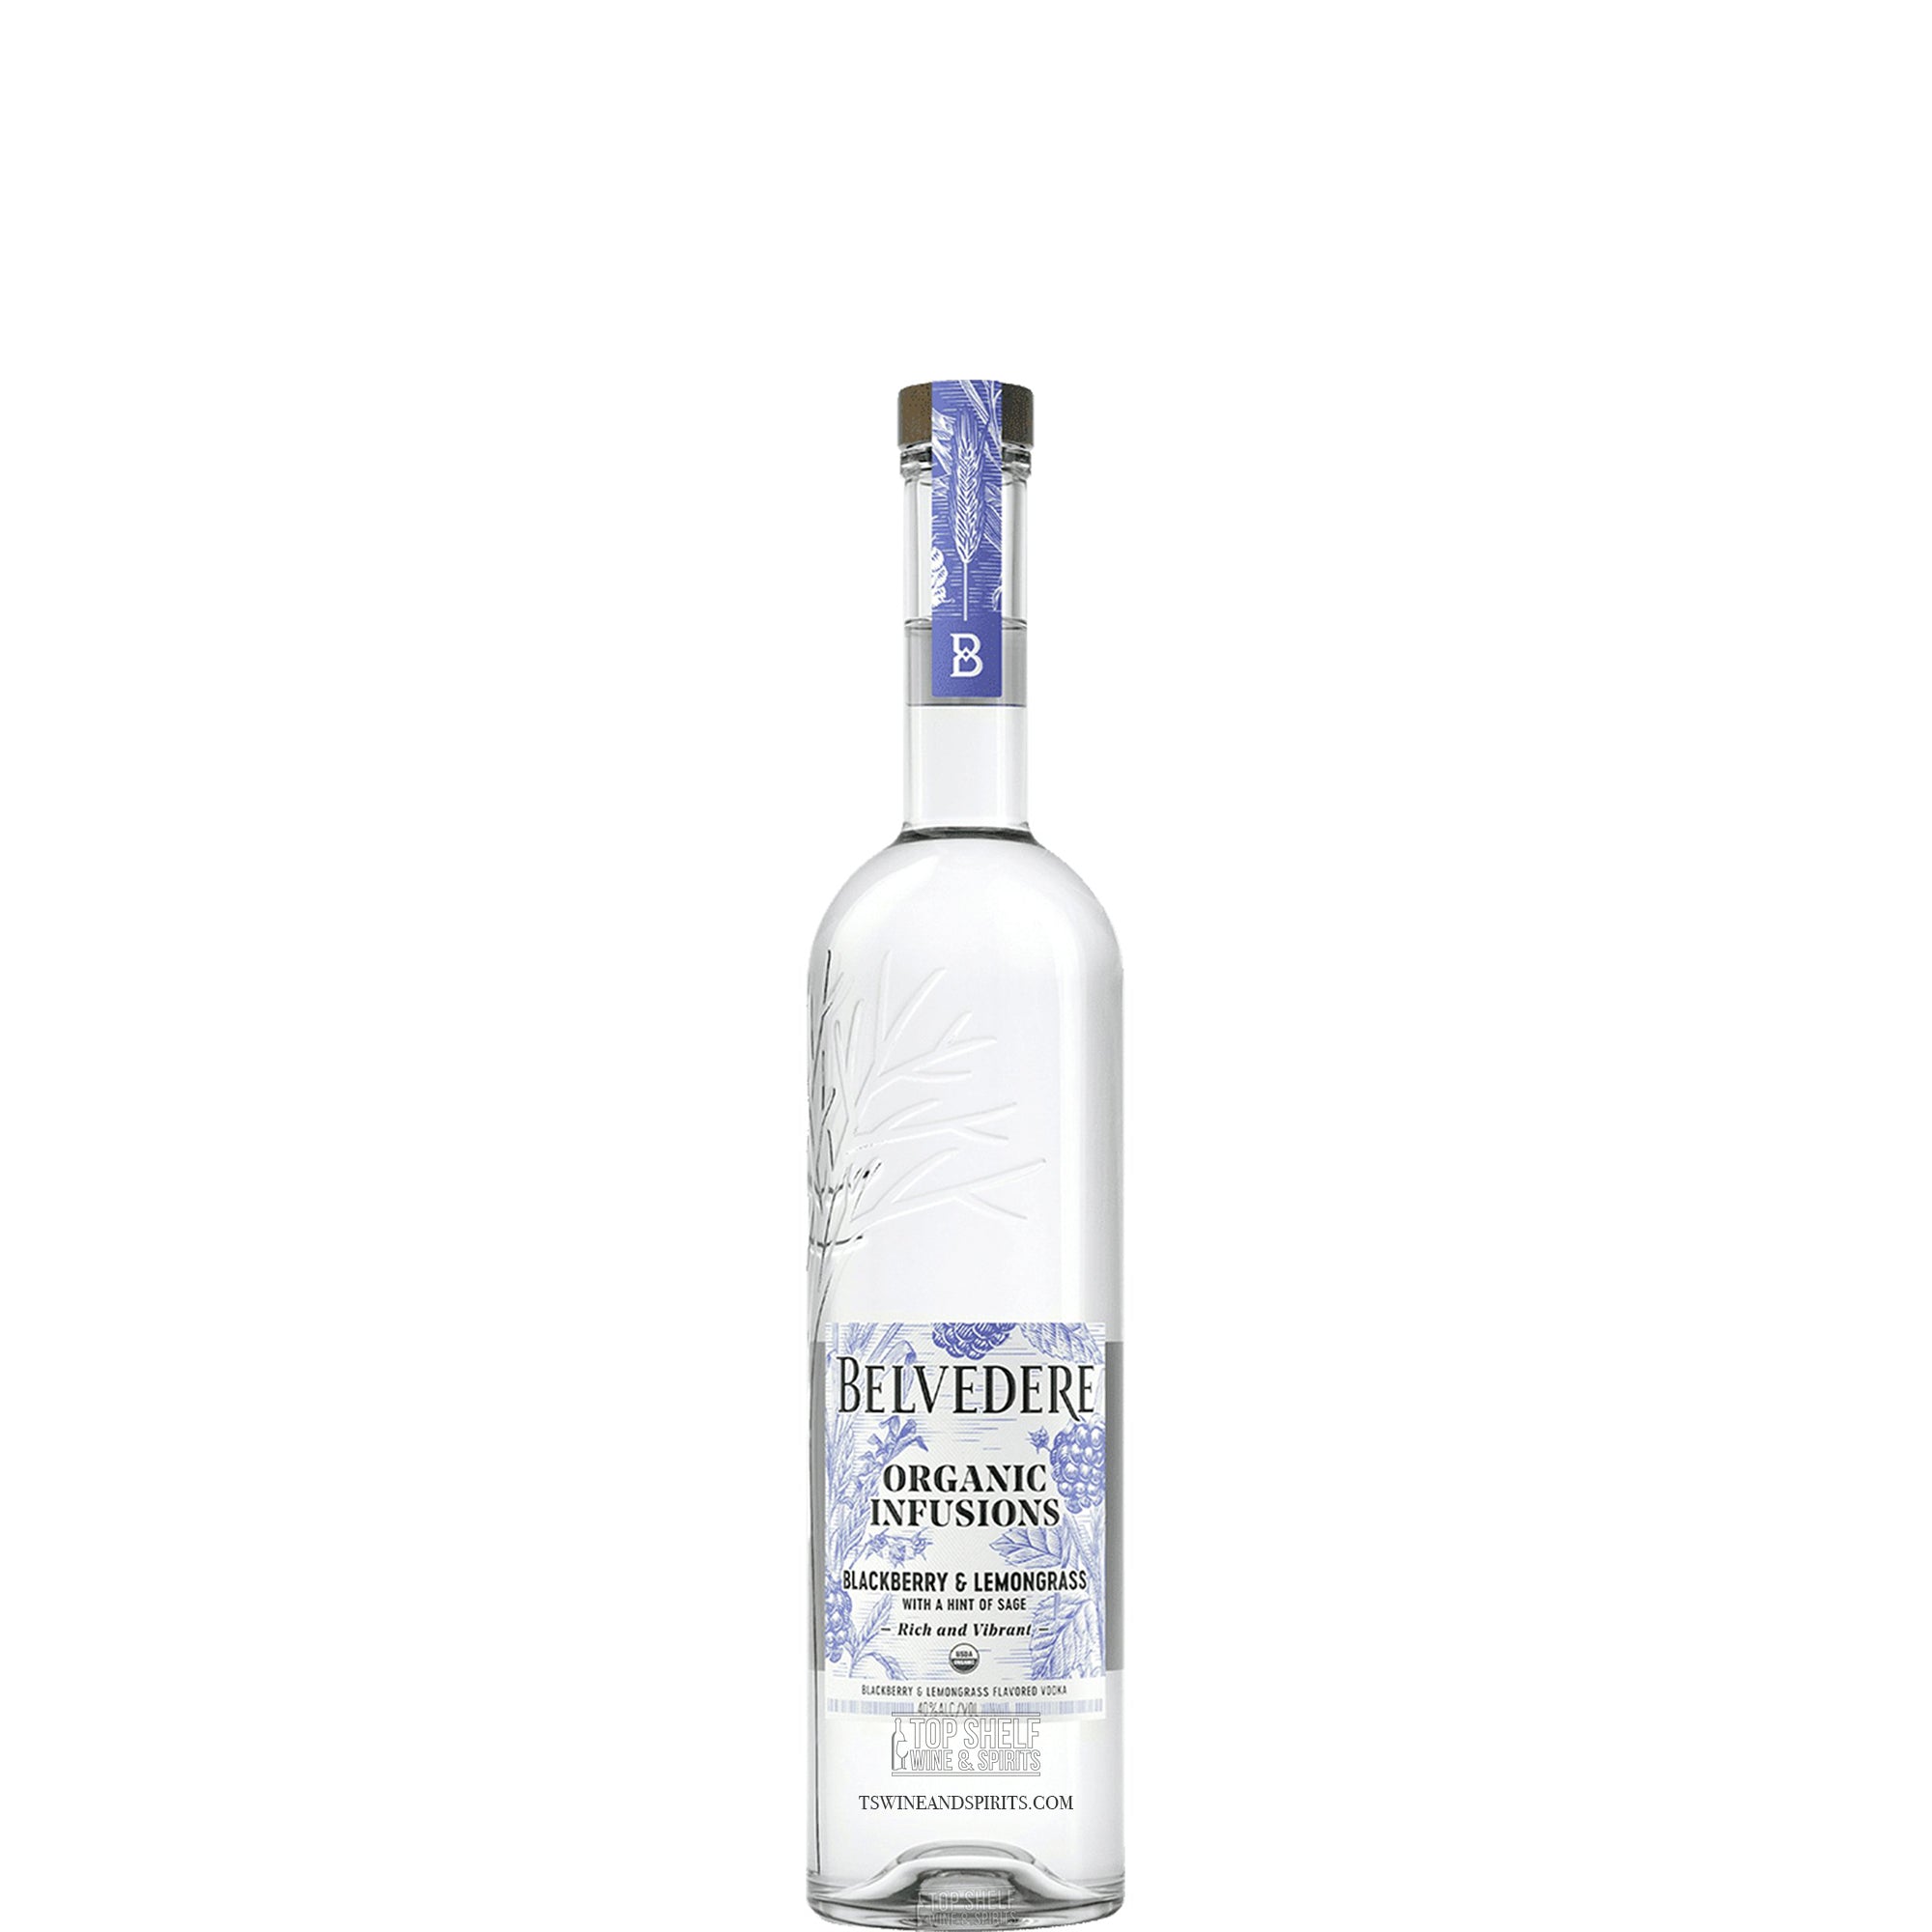 Belvedere Organic Infusions Blackberry & Lemongrass Vodka 50ml Sleeve (10 Bottles)